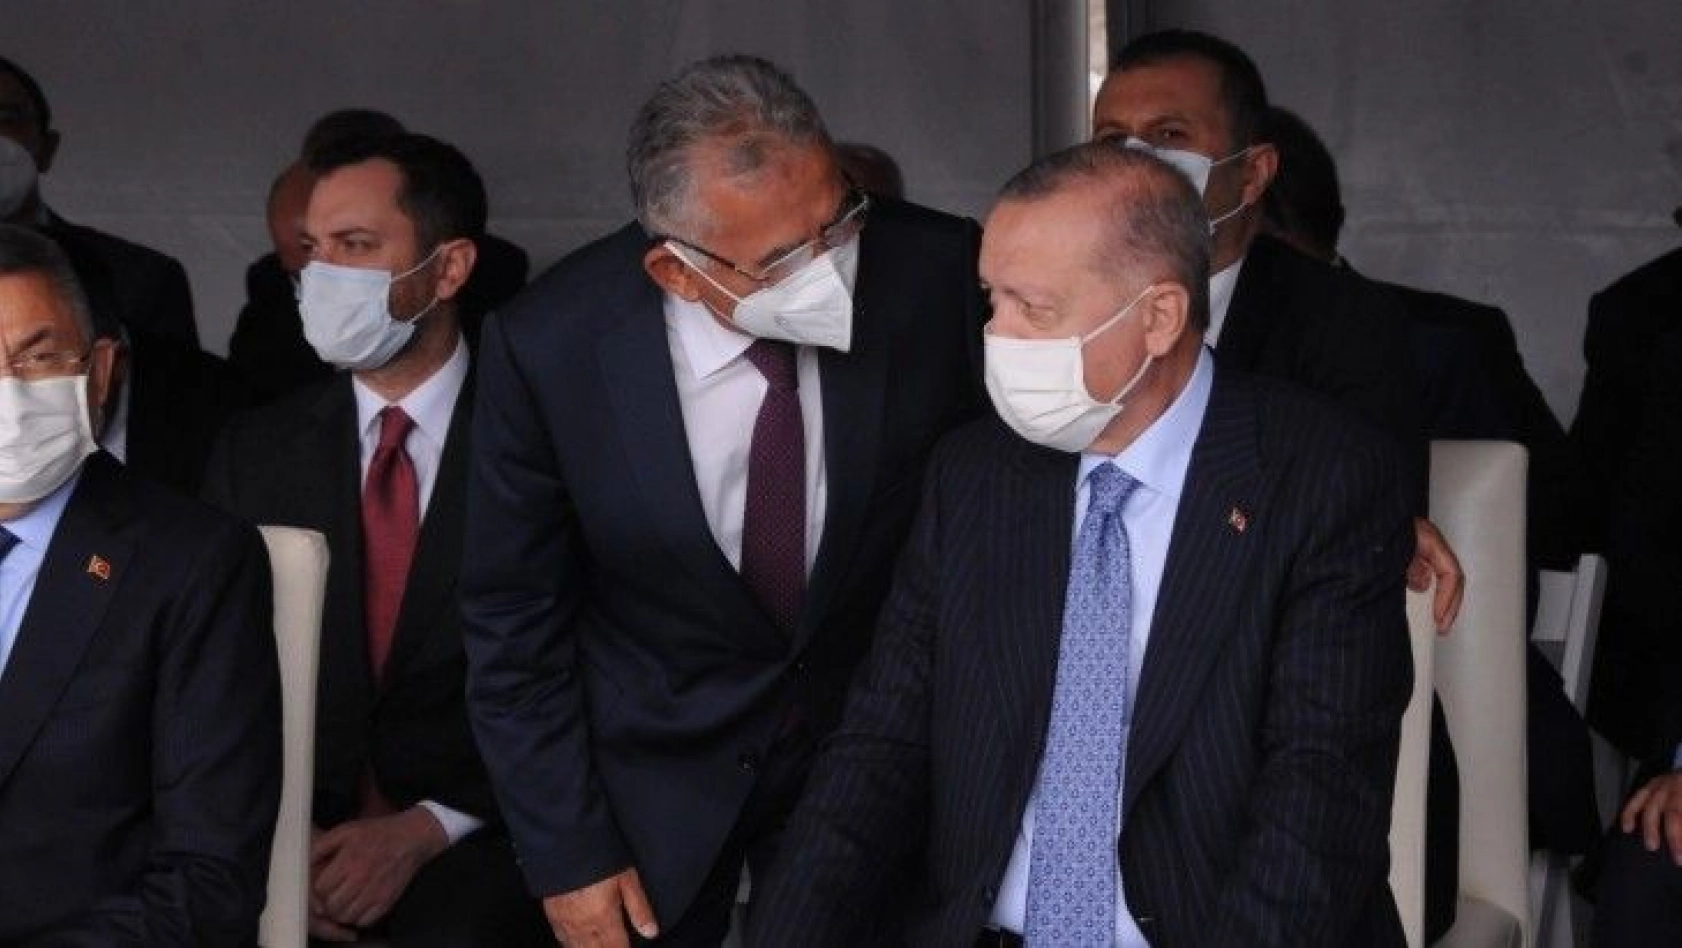 Büyükkılıç, Kırşehir'de Cumhurbaşkanı Erdoğan ile görüştü